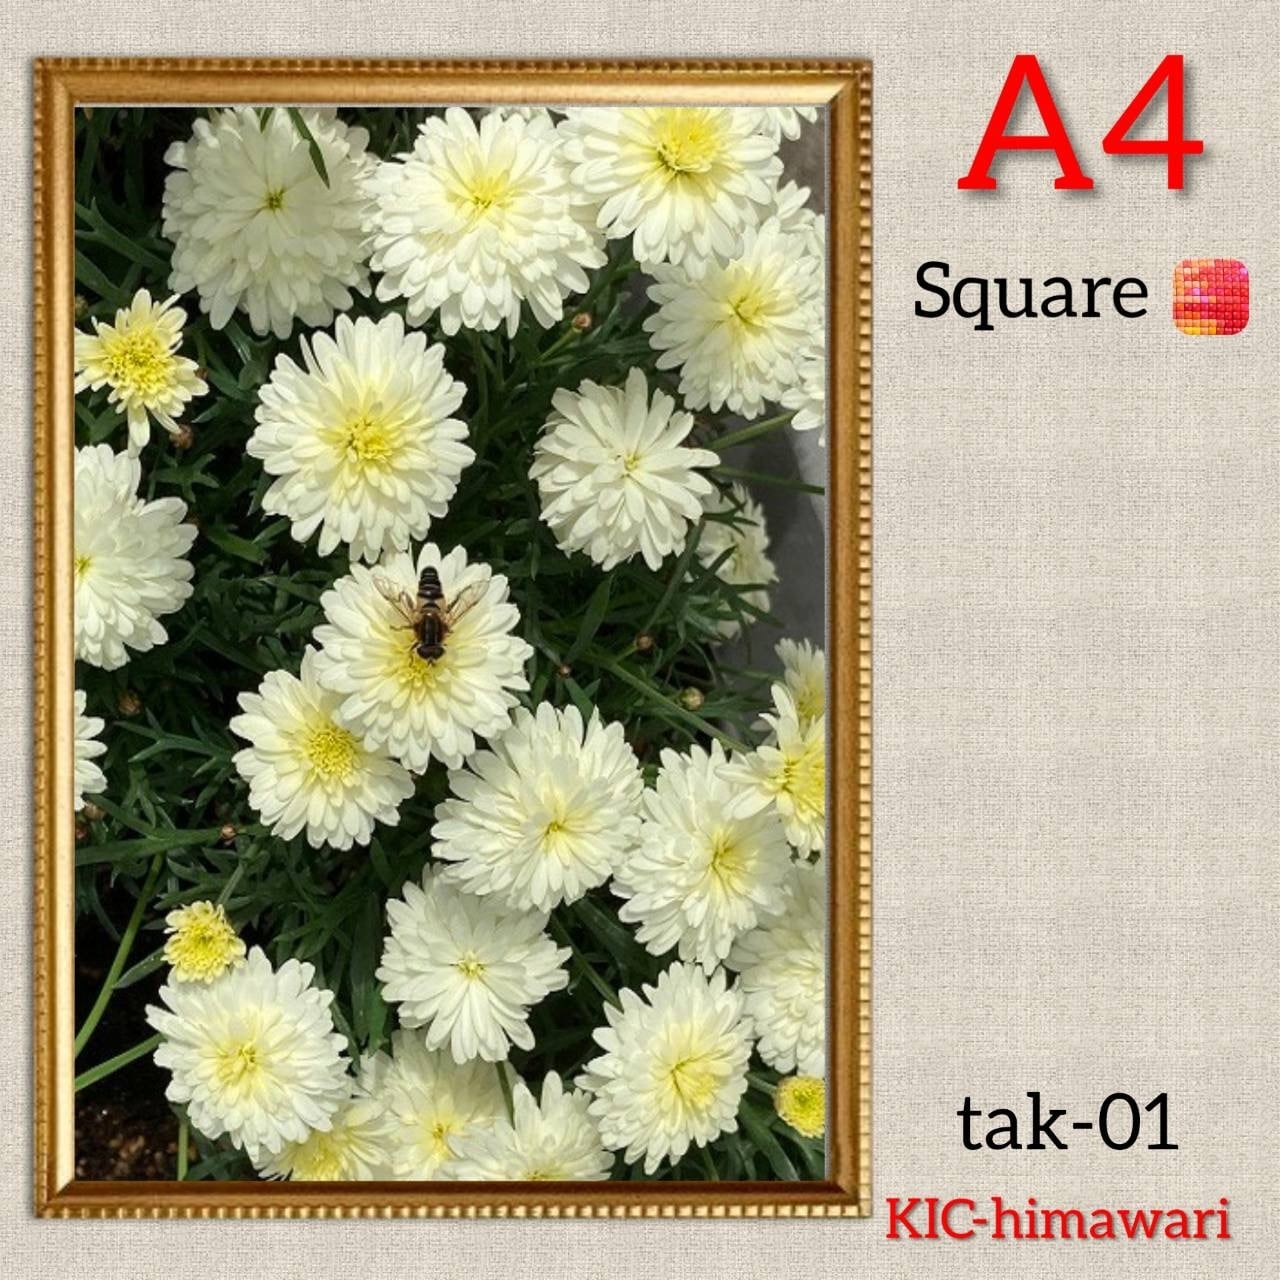 A4額付き 四角ビーズ【tak-01】ダイヤモンドアート